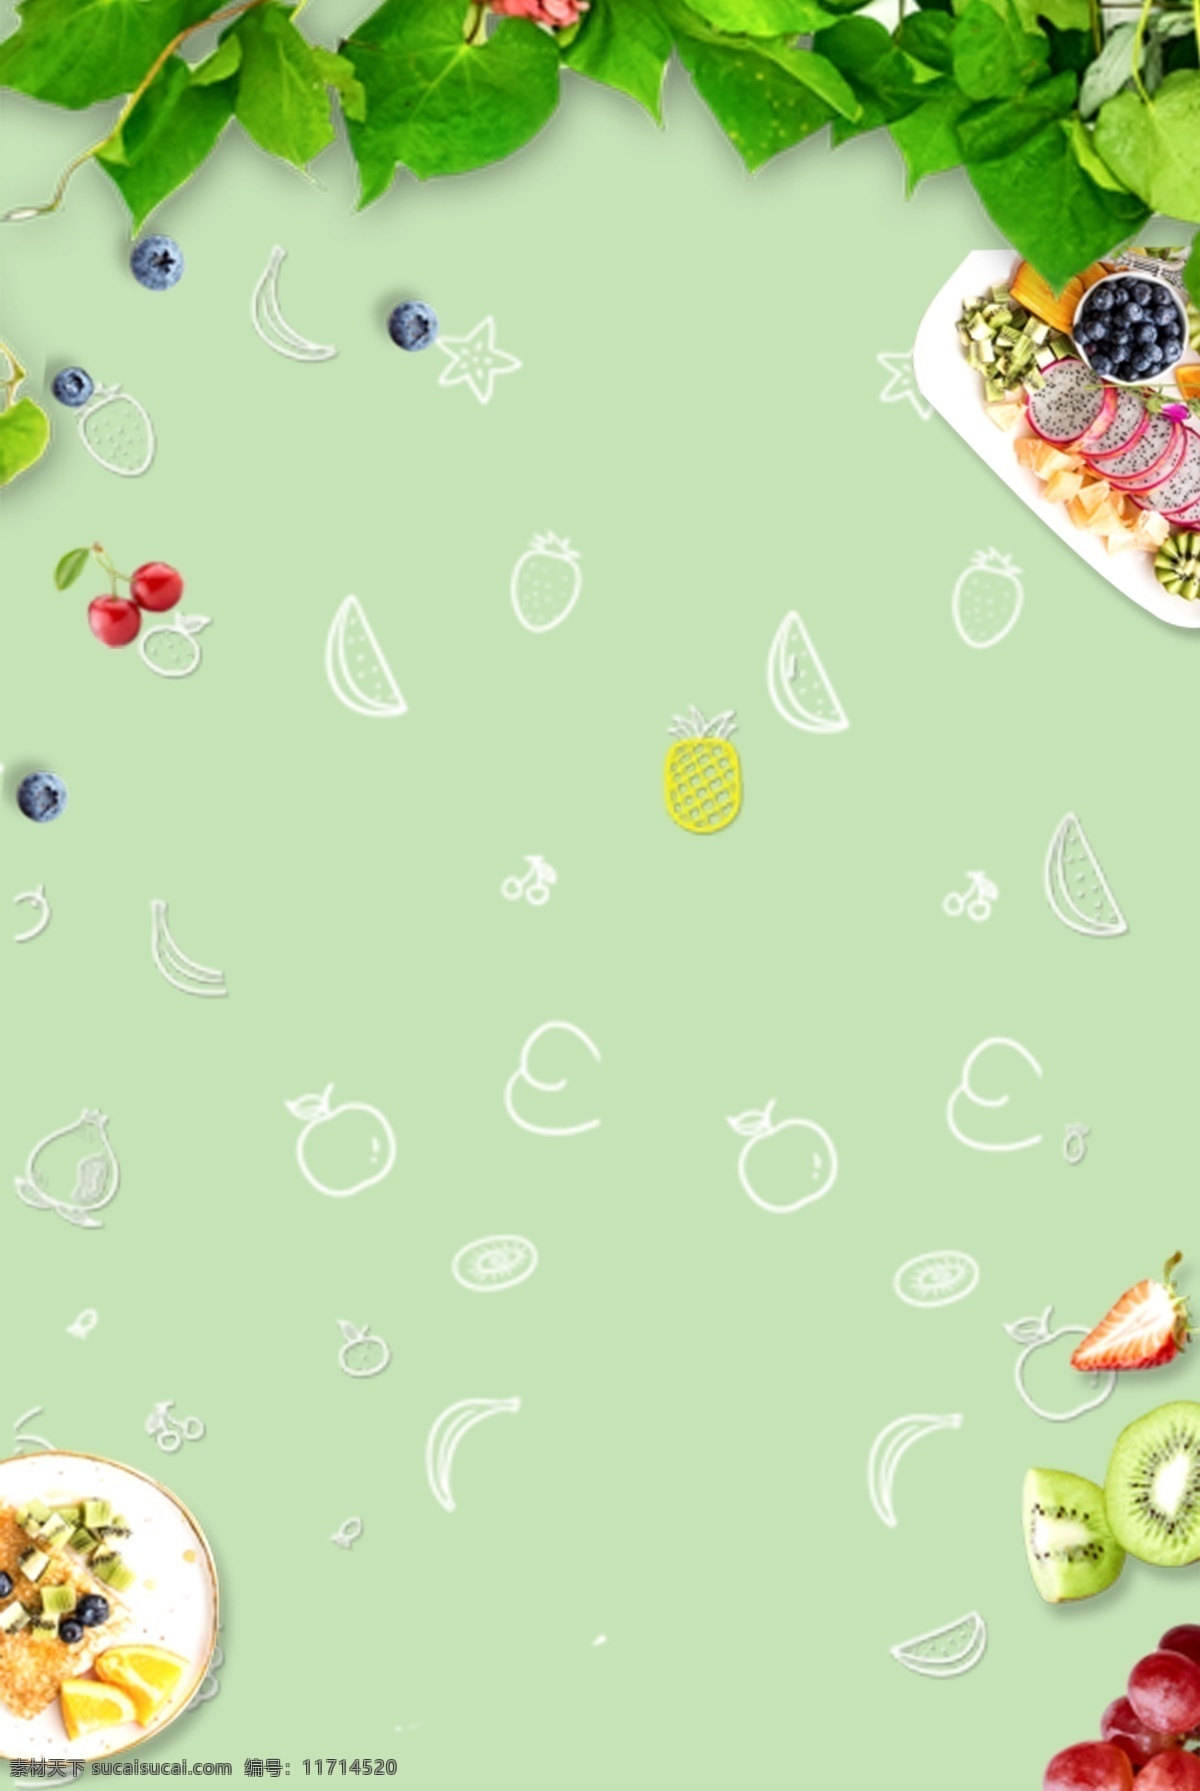 夏天 美食 早餐 绿叶 海报 背景 蓝莓 草莓 简约清新 海报背景 psd分层